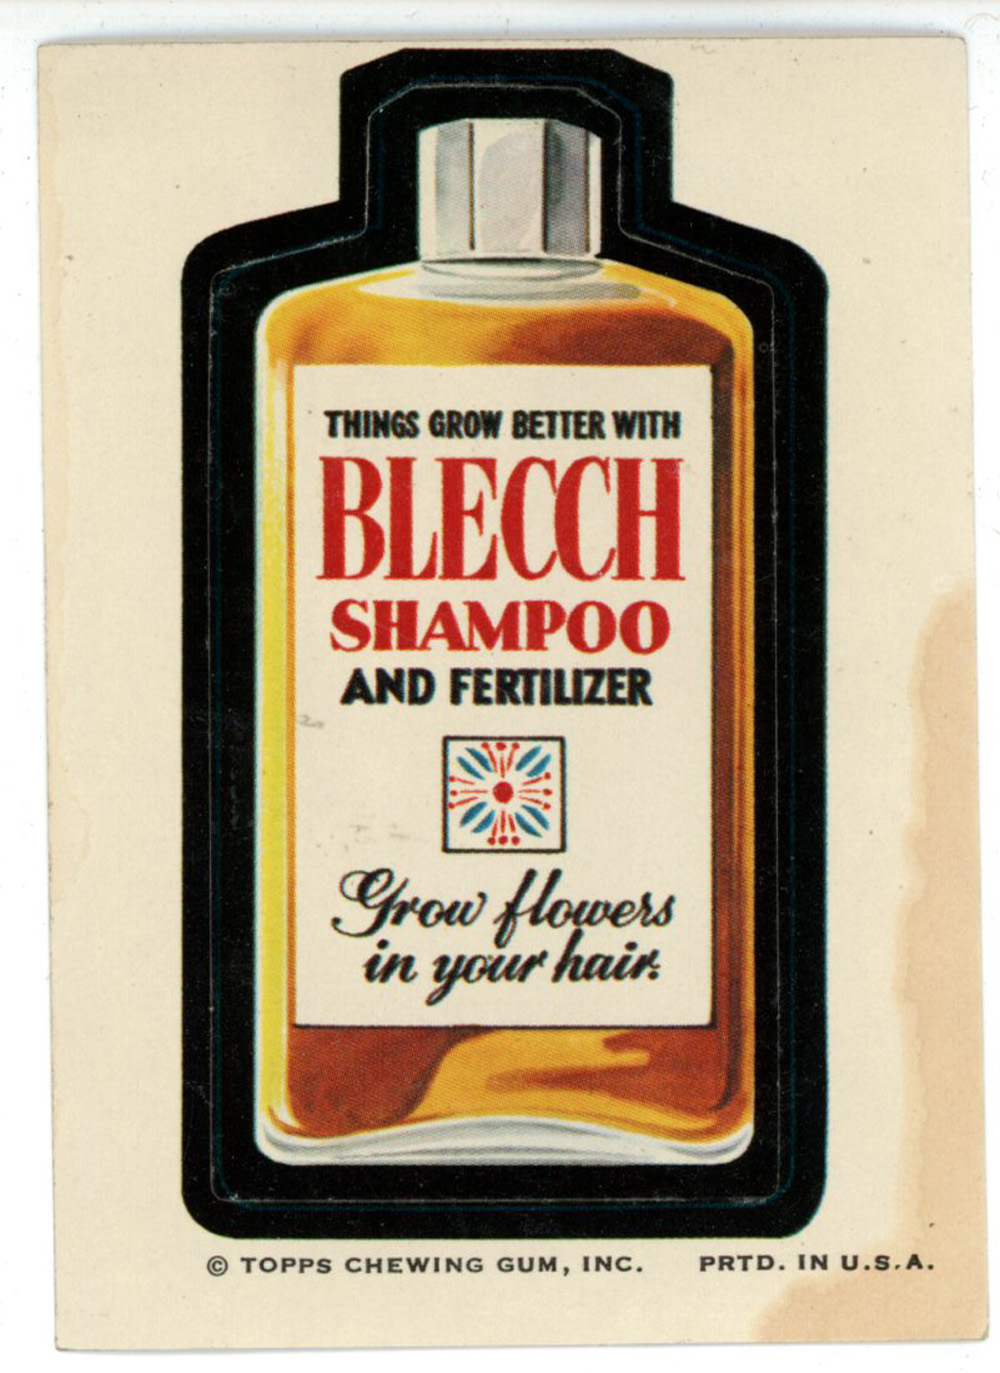 1973 Topps Wacky Packages Series 1 Bleech Shampoo